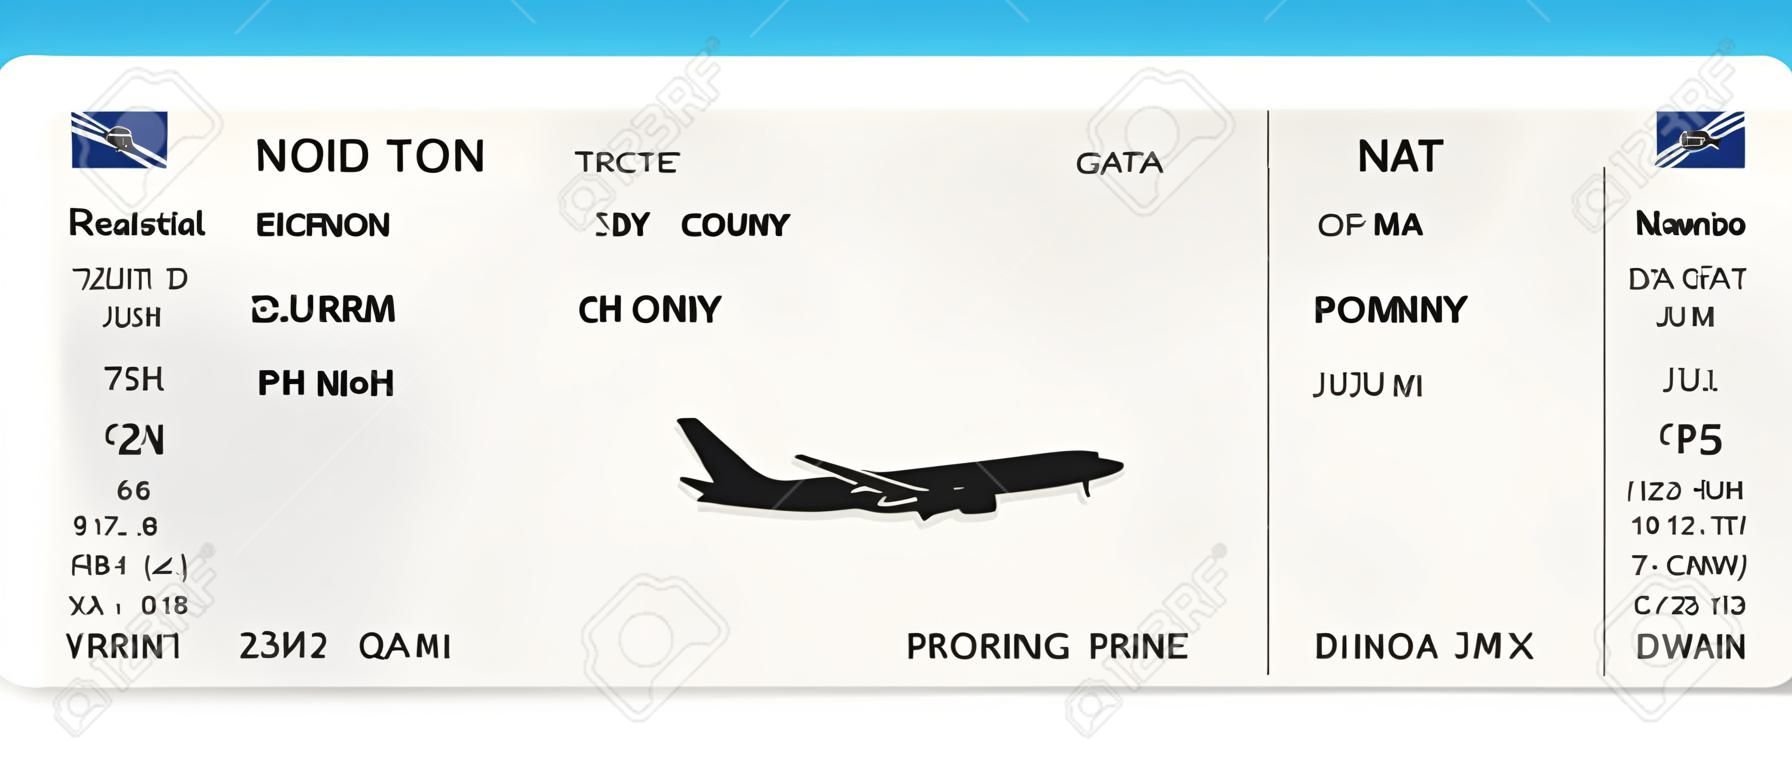 Conception de billet d'avion ou de carte d'embarquement réaliste bleu avec un temps de vol irréel et le nom du passager. Illustration vectorielle du modèle d'une carte d'embarquement